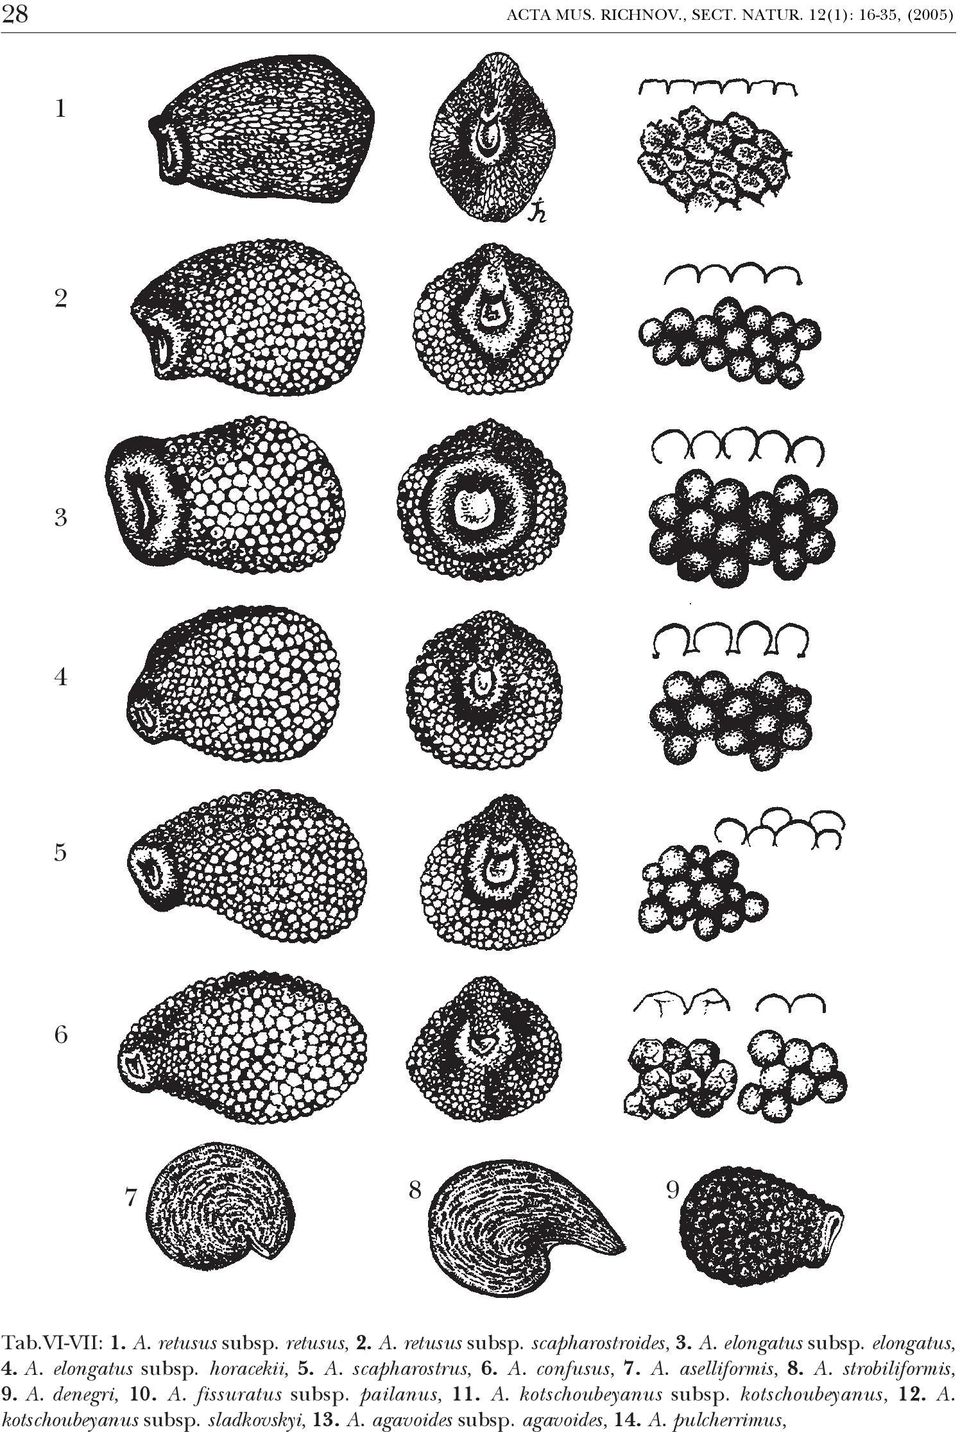 A. confusus, 7. A. aselliformis, 8. A. strobiliformis, 9. A. denegri, 10. A. fissuratus subsp. pailanus, 11. A. kotschoubeyanus subsp.